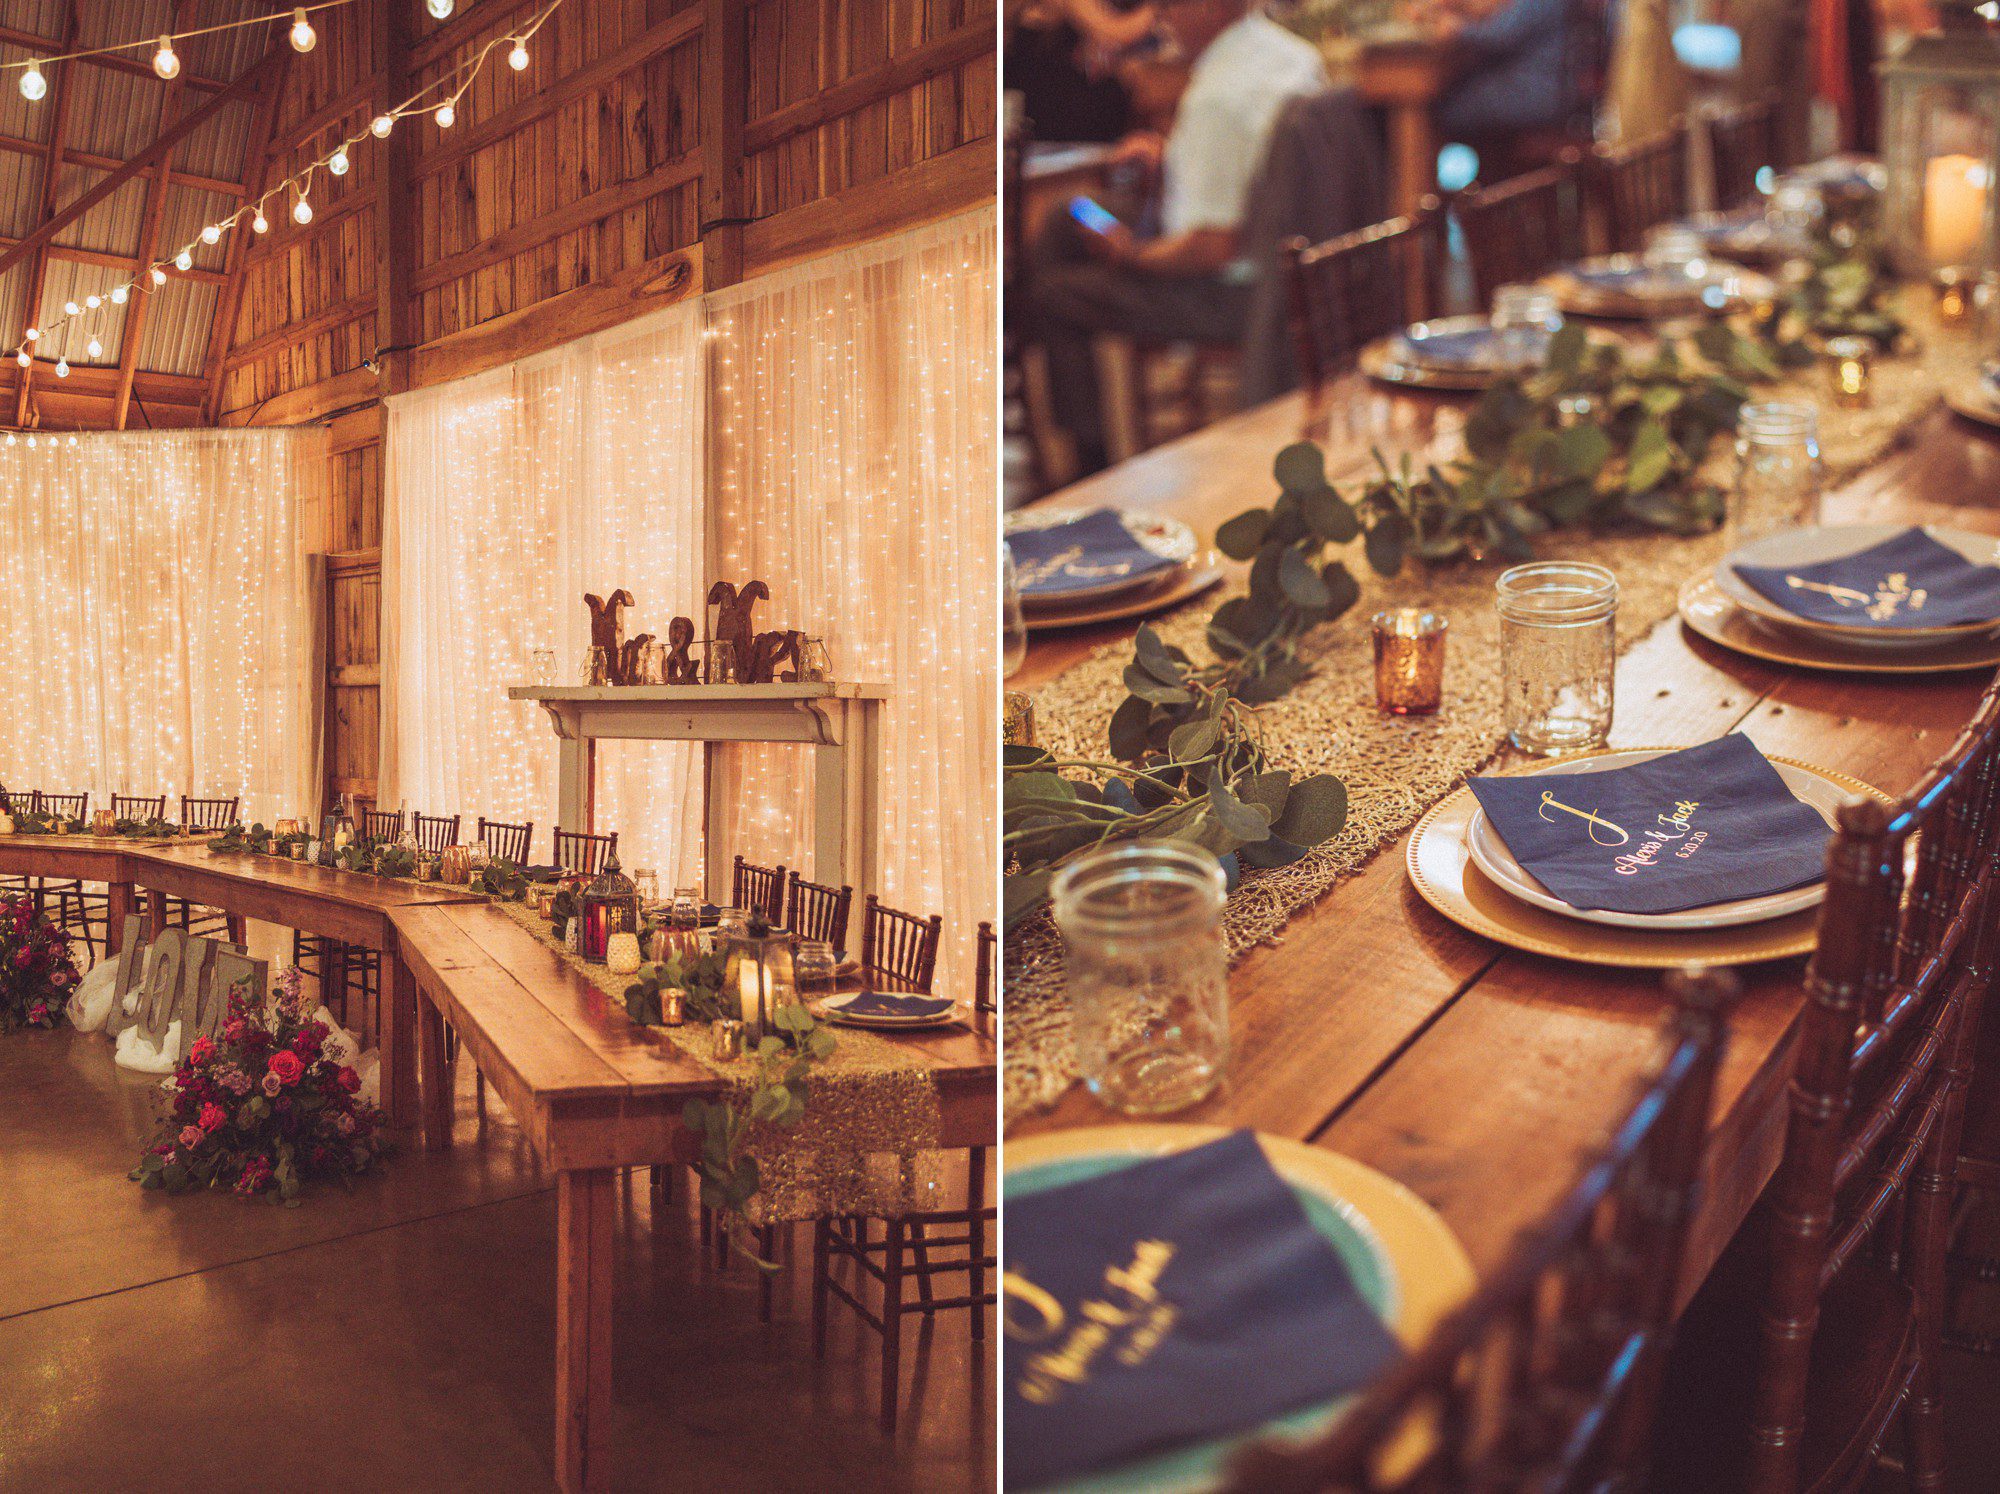 Rustic barn wedding reception decor centerpieces